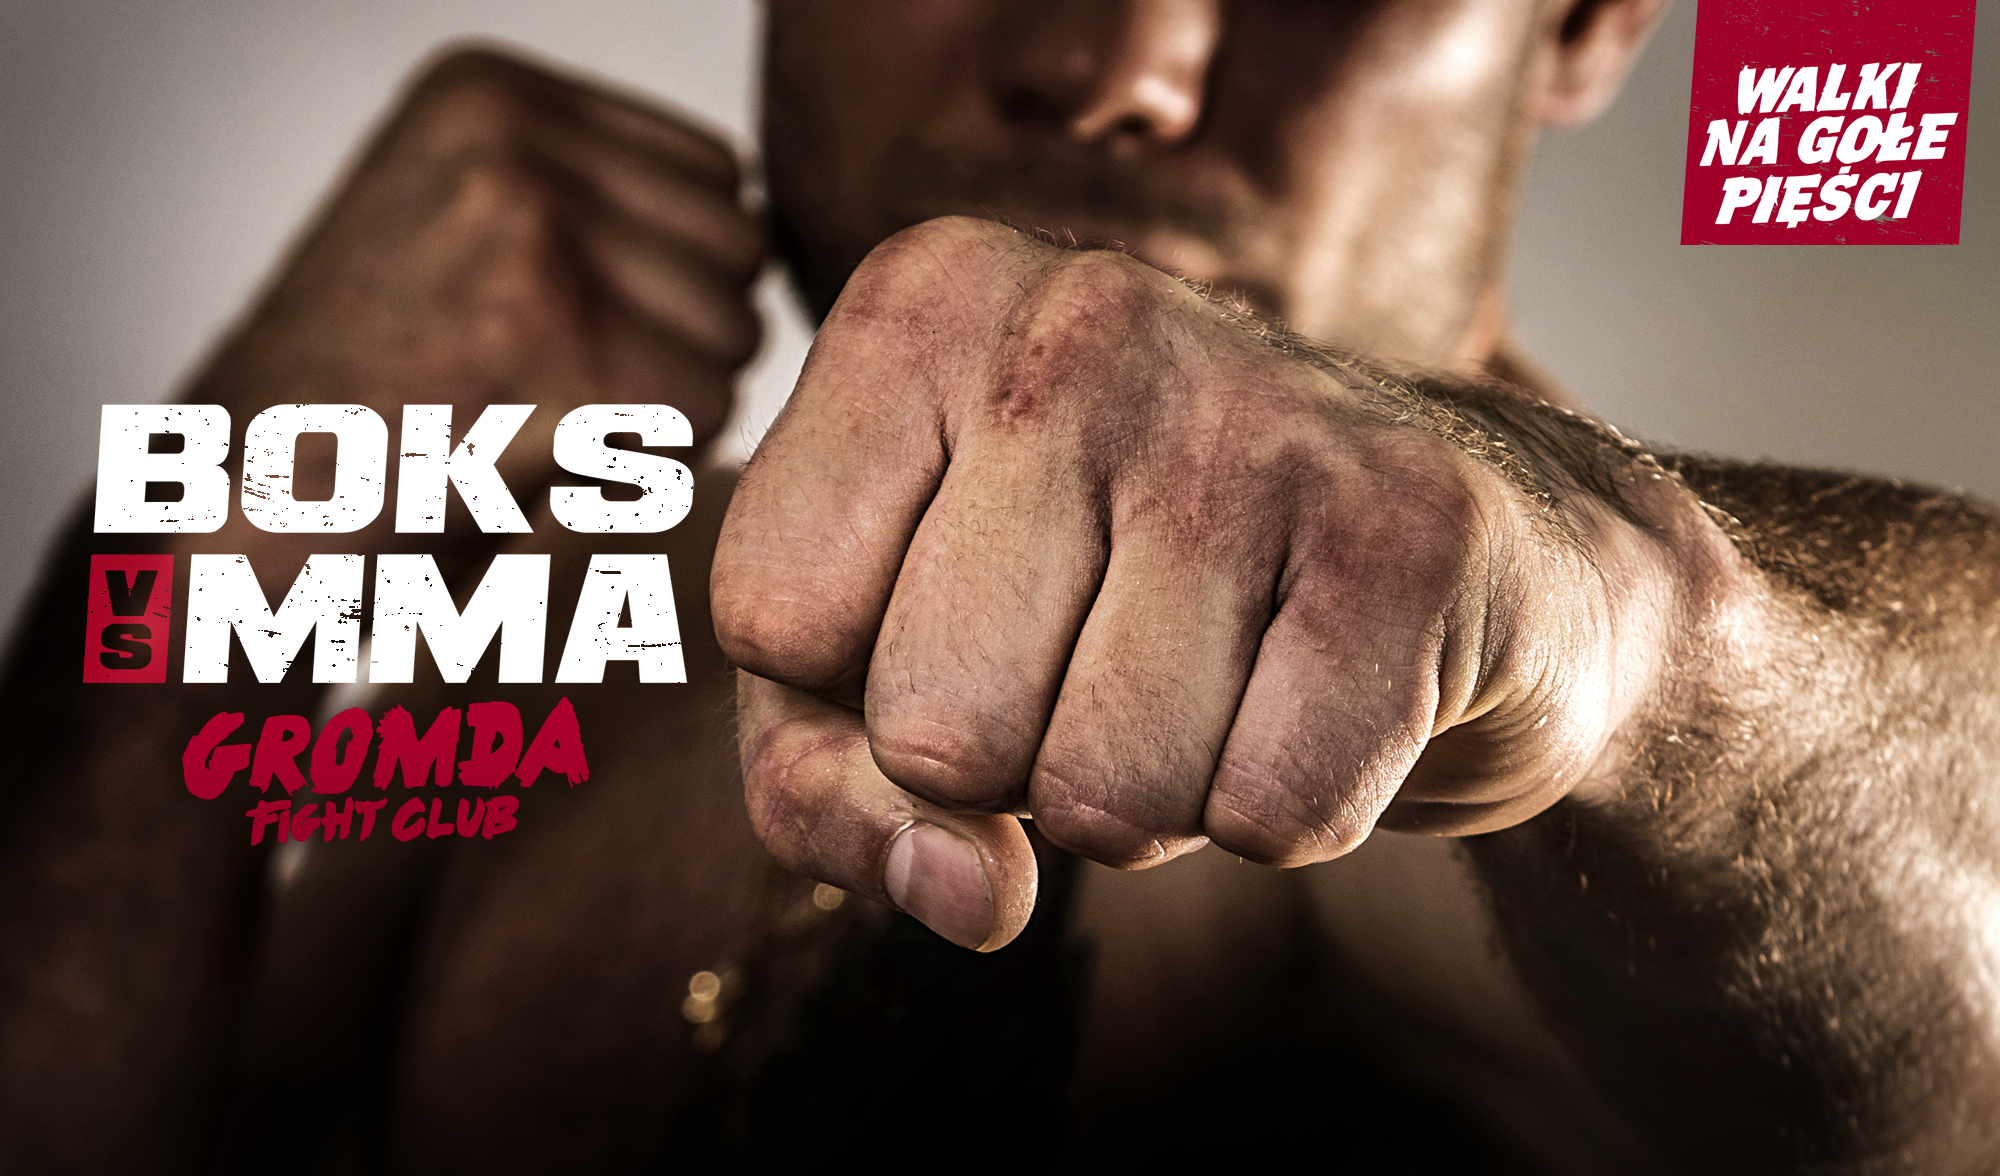 BOKS vs MMA w walce na gołe pięści. GROMDA Fight Club